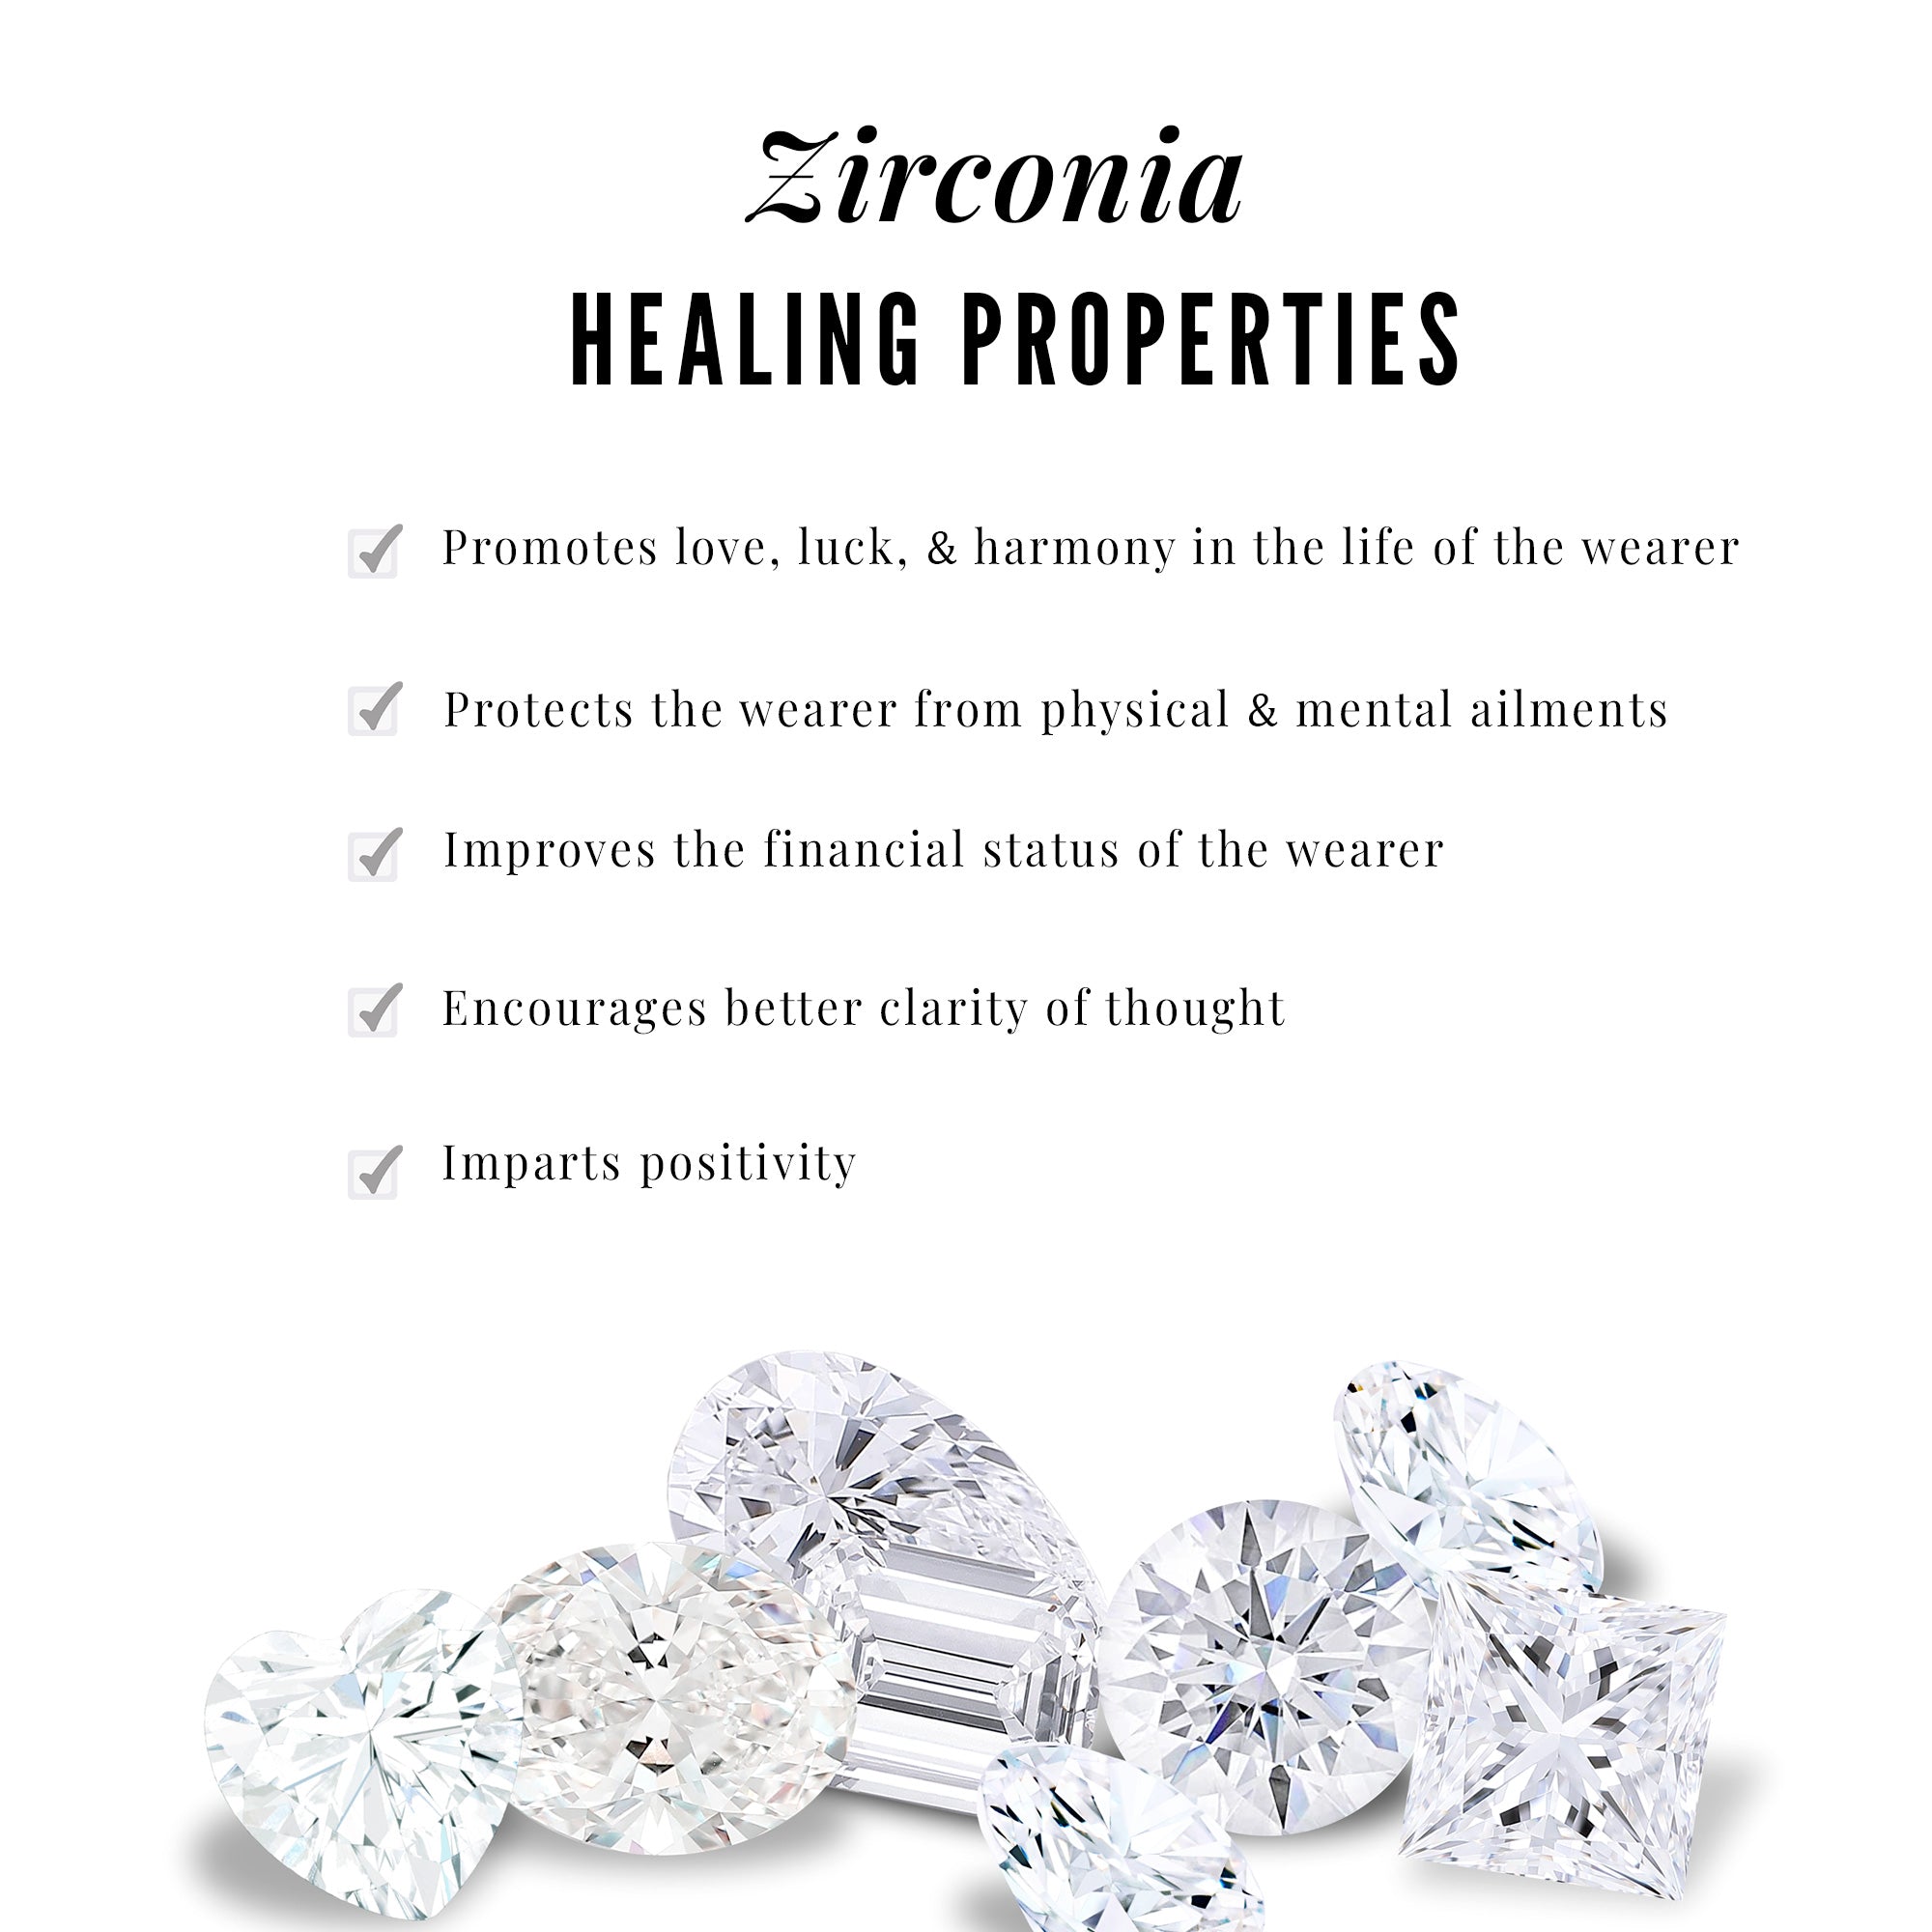 Zircon Interlock Infinity Heart Pendant Zircon - ( AAAA ) - Quality - Rosec Jewels